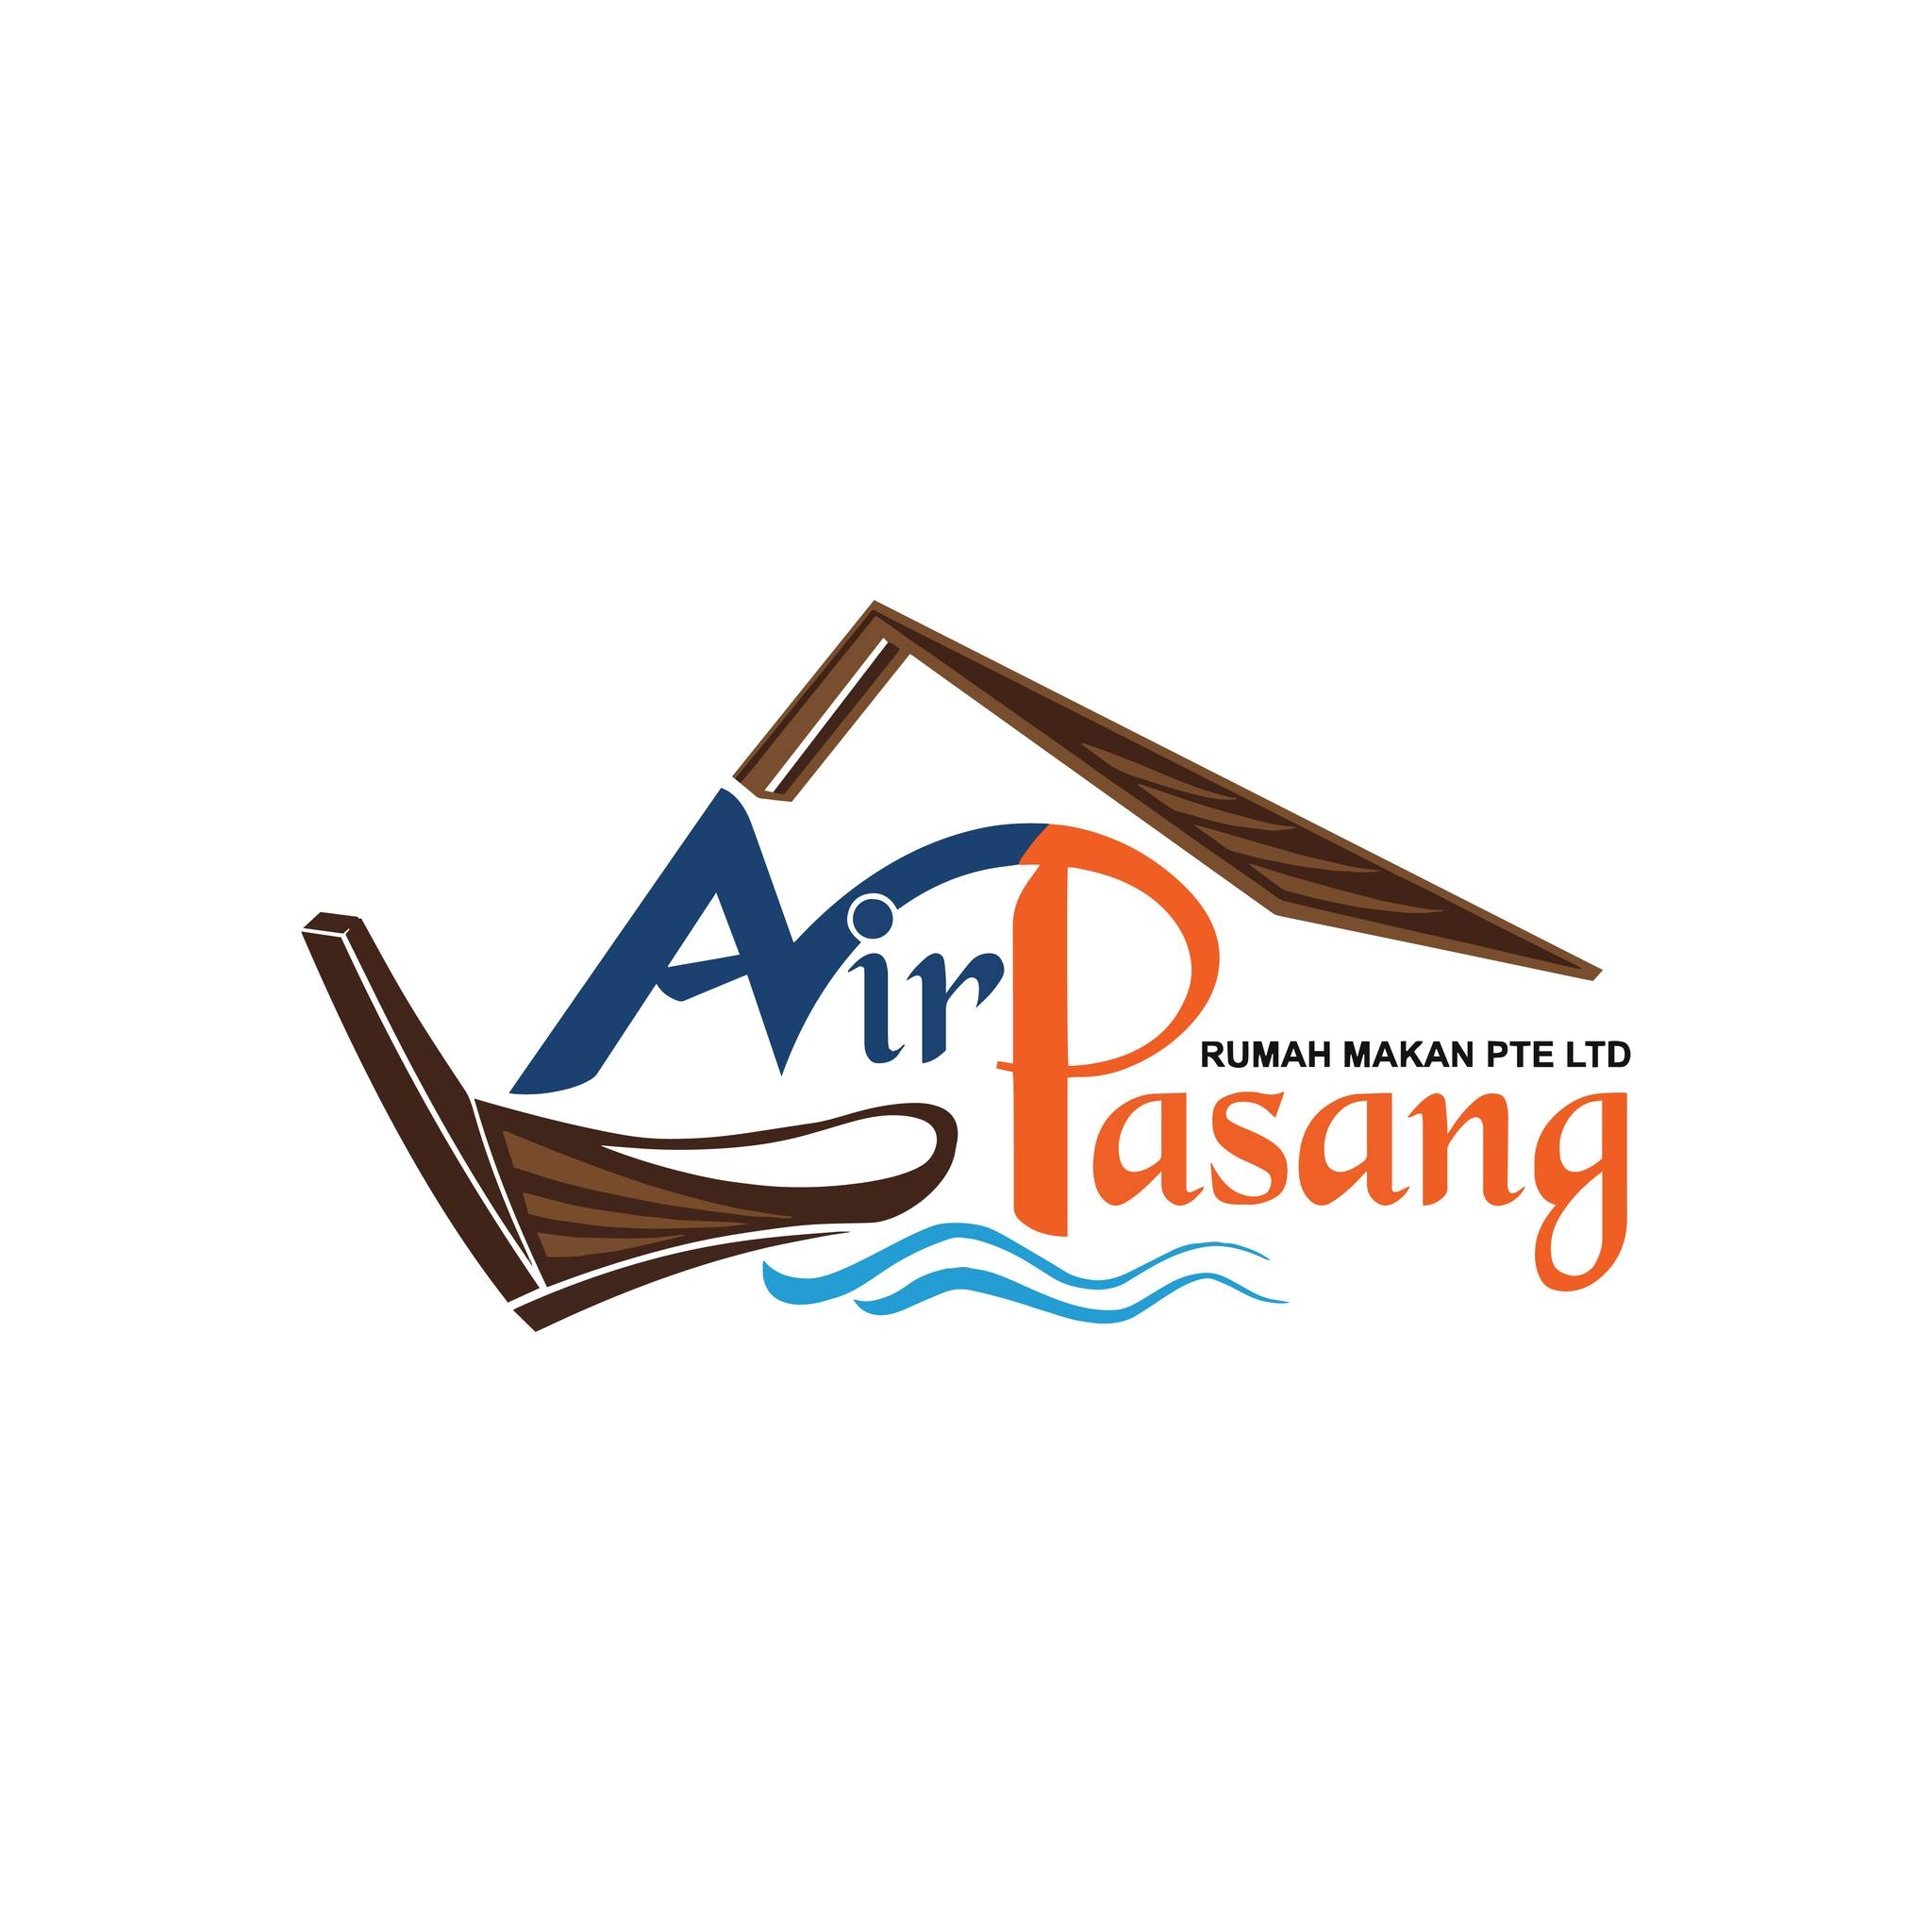 Air Pasang Rumah Makan Pte Ltd